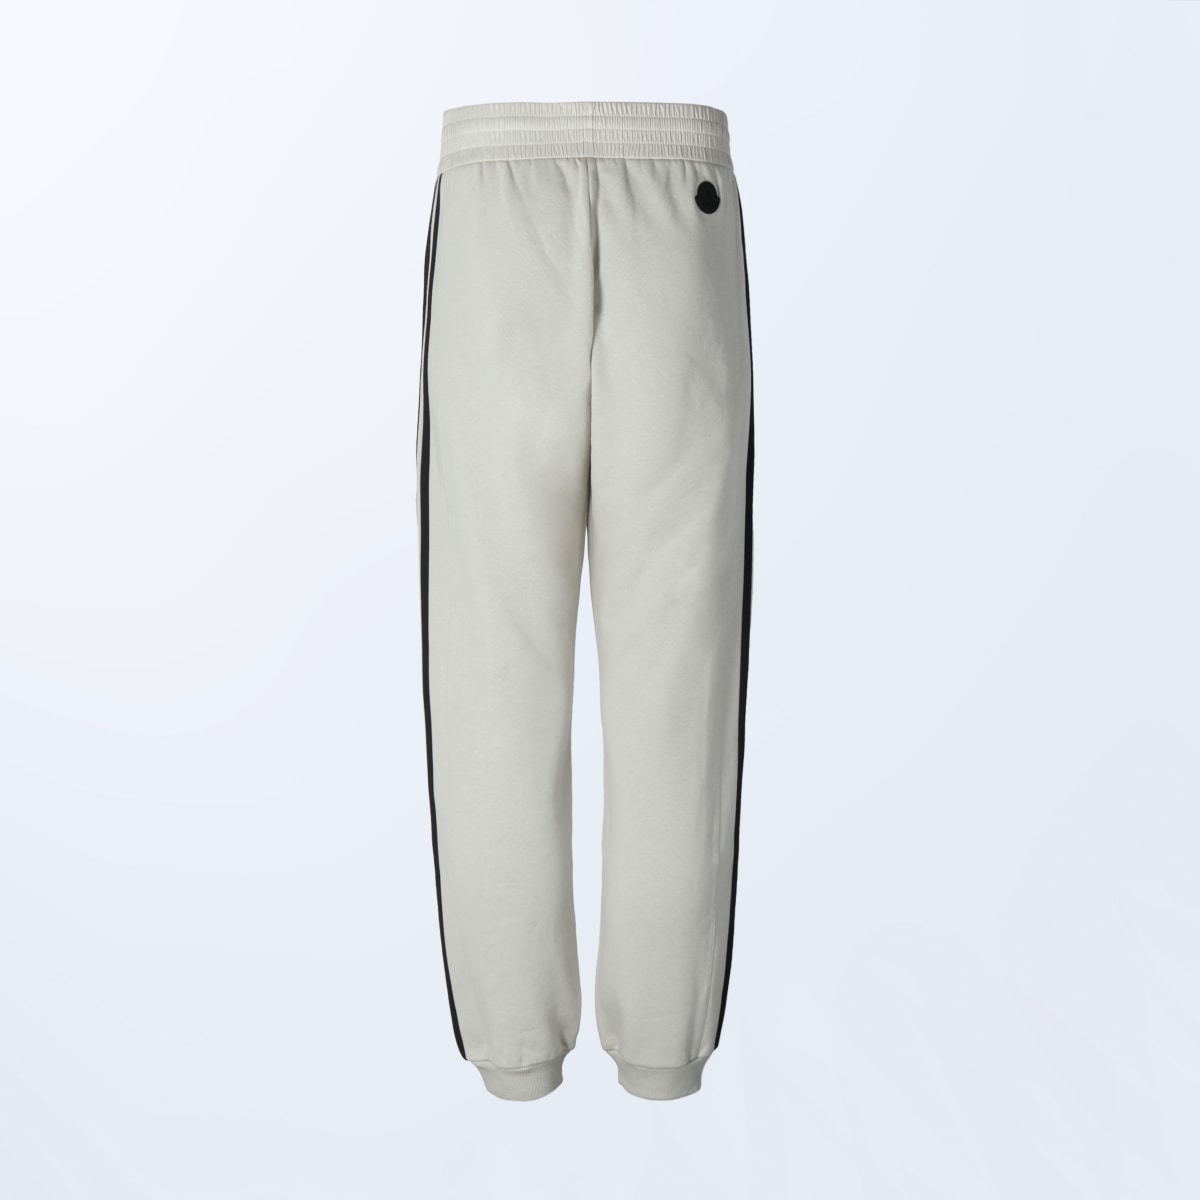 Adidas Moncler x adidas Originals Sweat Pants. 7